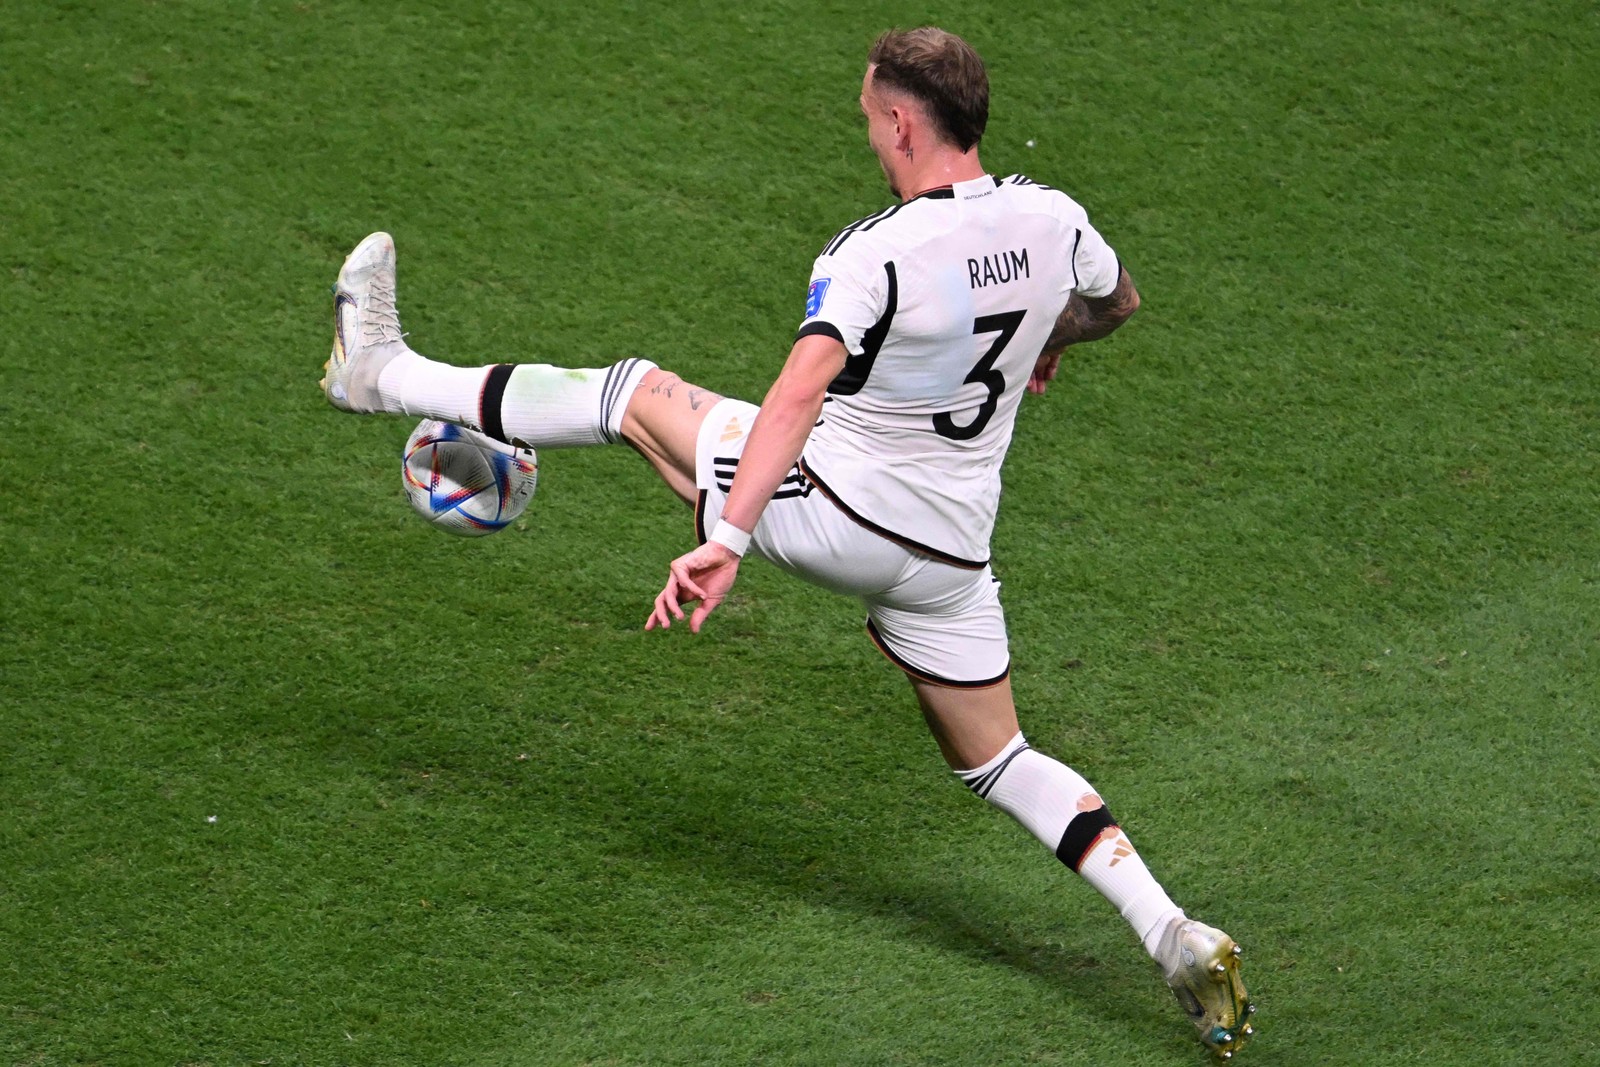 Zagueiro Raum, da Alemanha, se estica para dominar a bola — Foto: KIRILL KUDRYAVTSEV/AFP